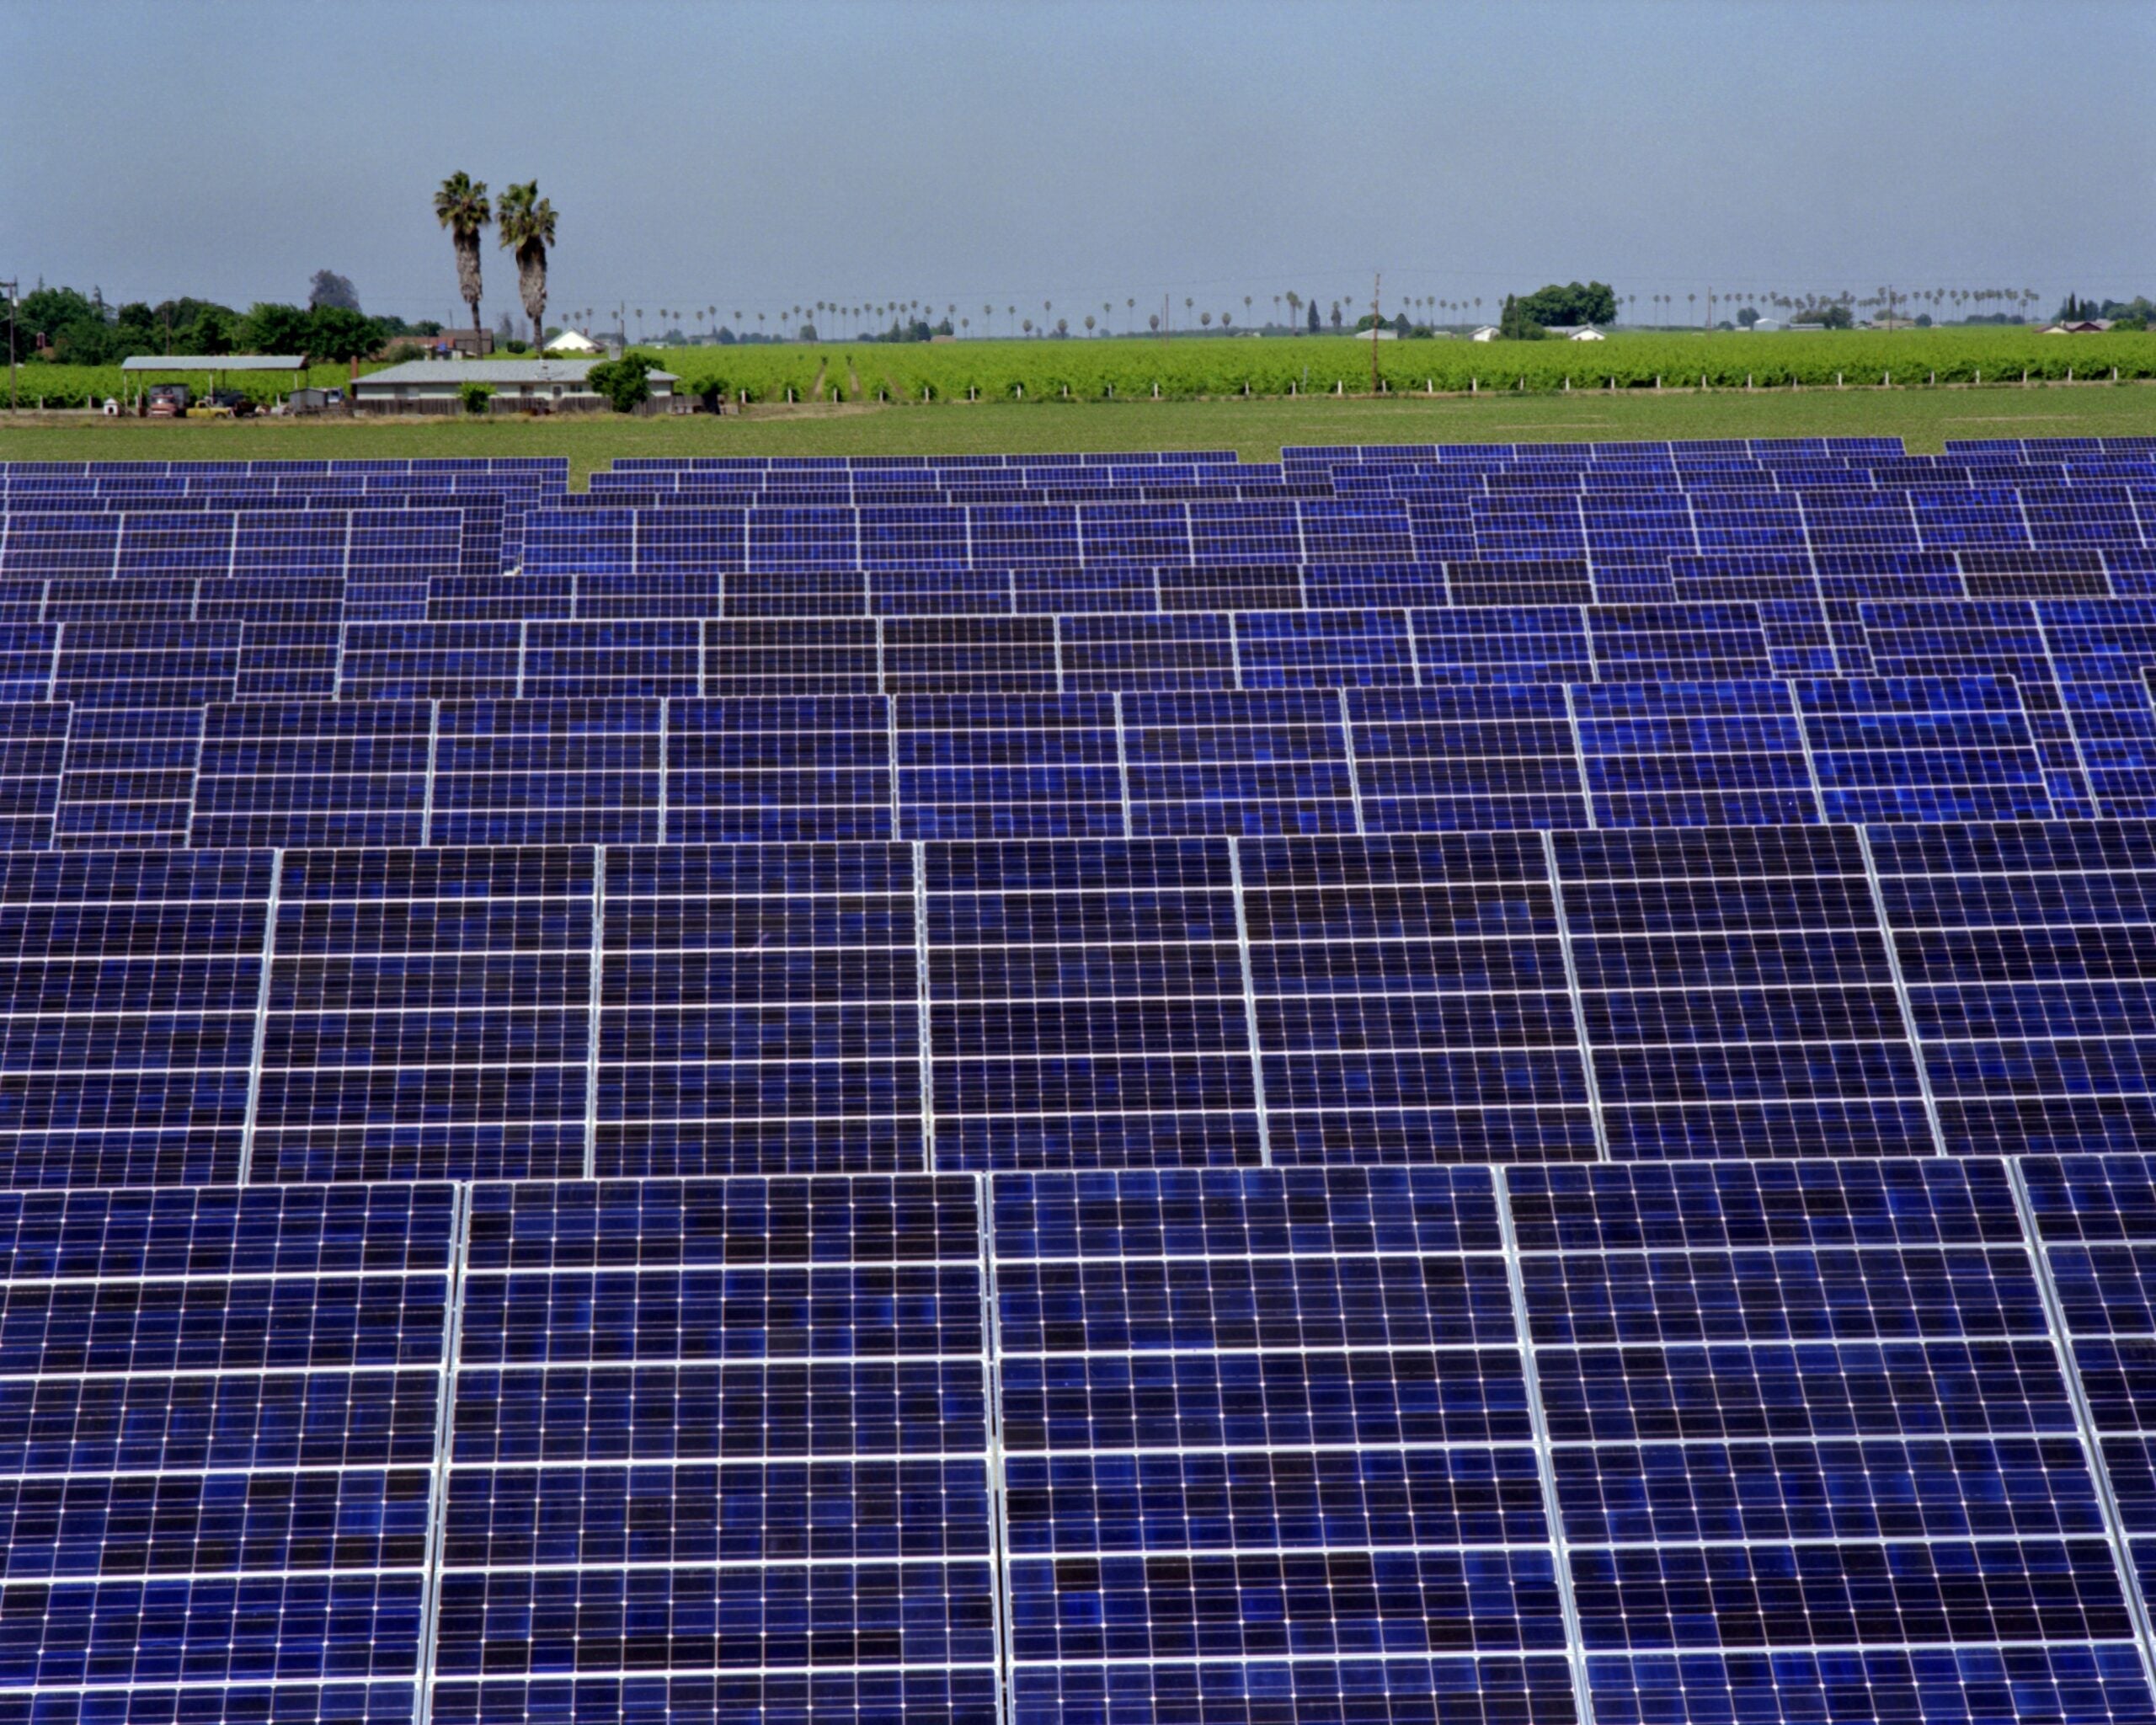 PG&E solar farm in California